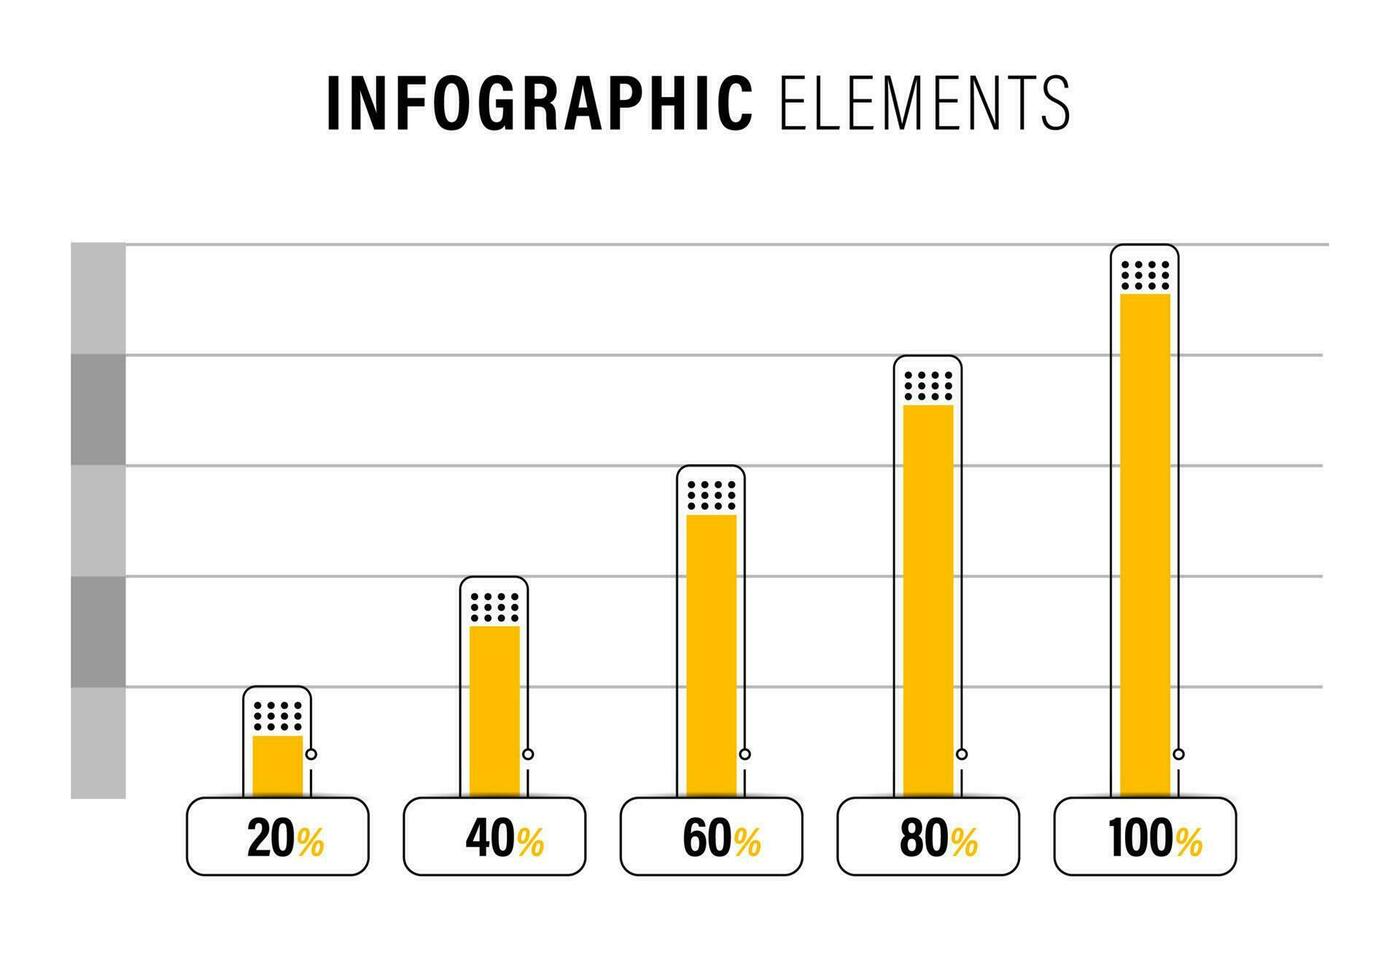 modern bedrijf infographic stappen sjabloon achtergrond ontwerp vector